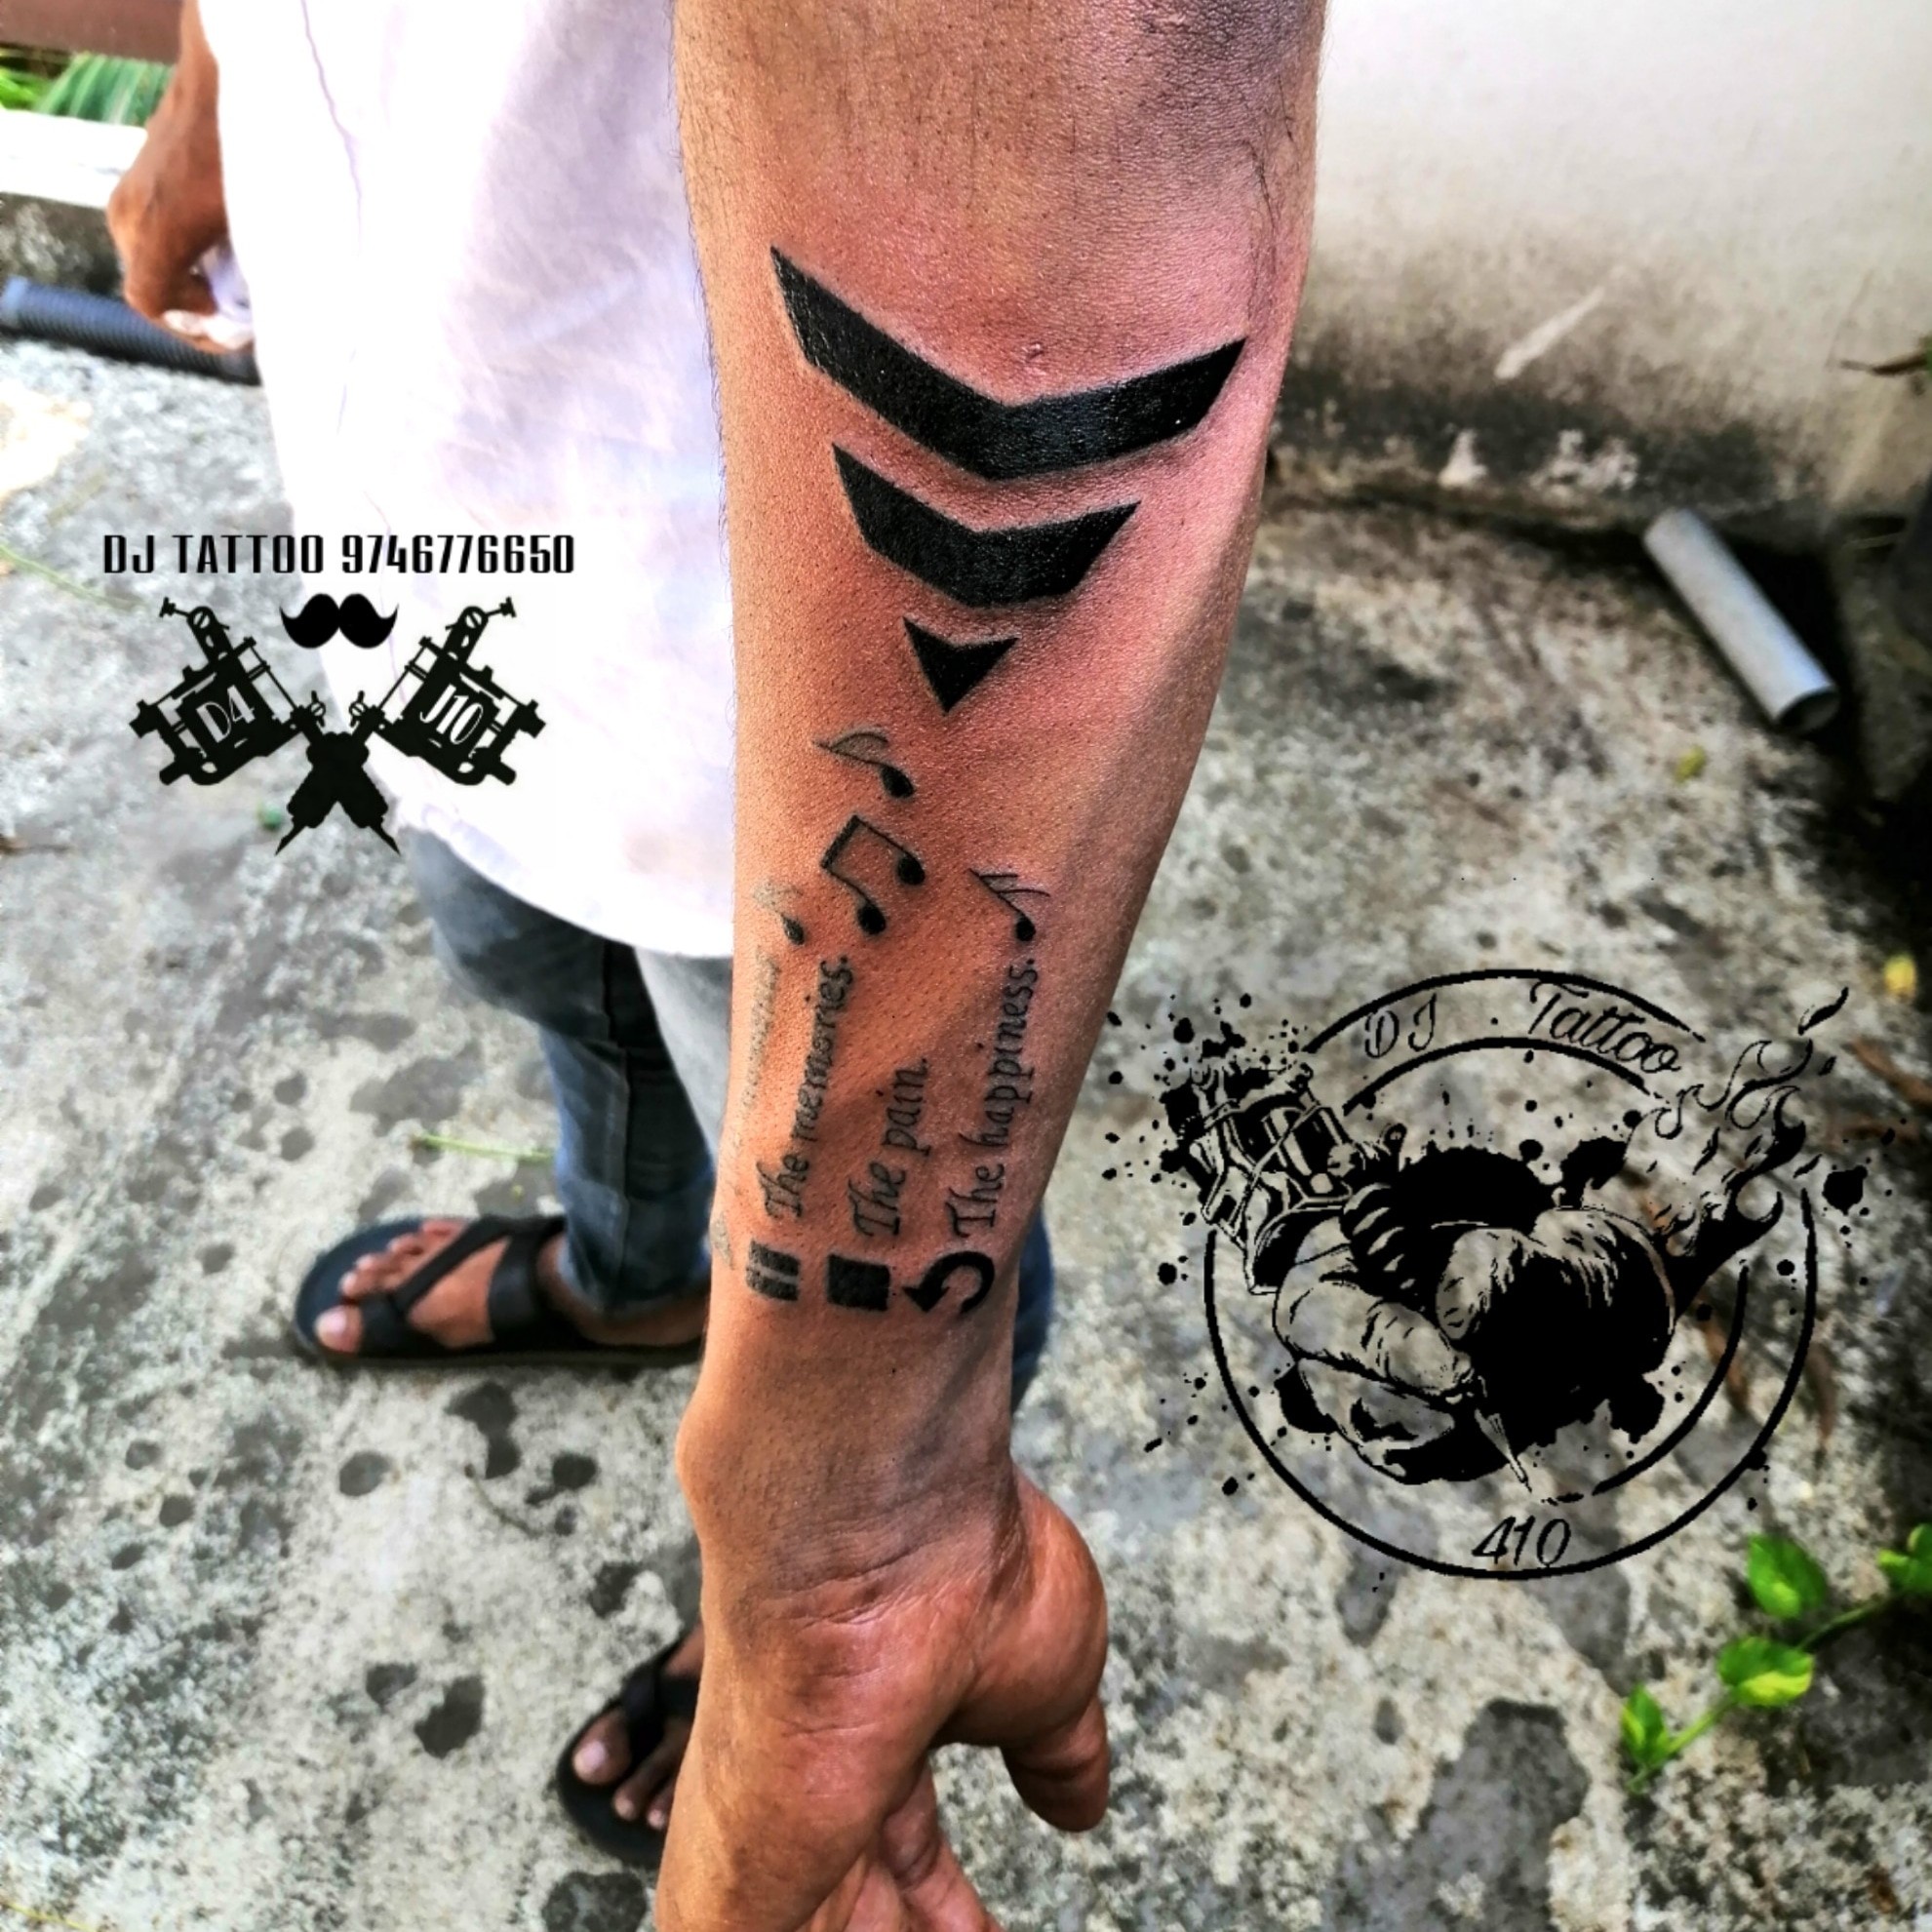 Mix Table DJ Tattoo by Samuel Sancho  Dj tattoo Music tattoo sleeves  Band tattoo designs